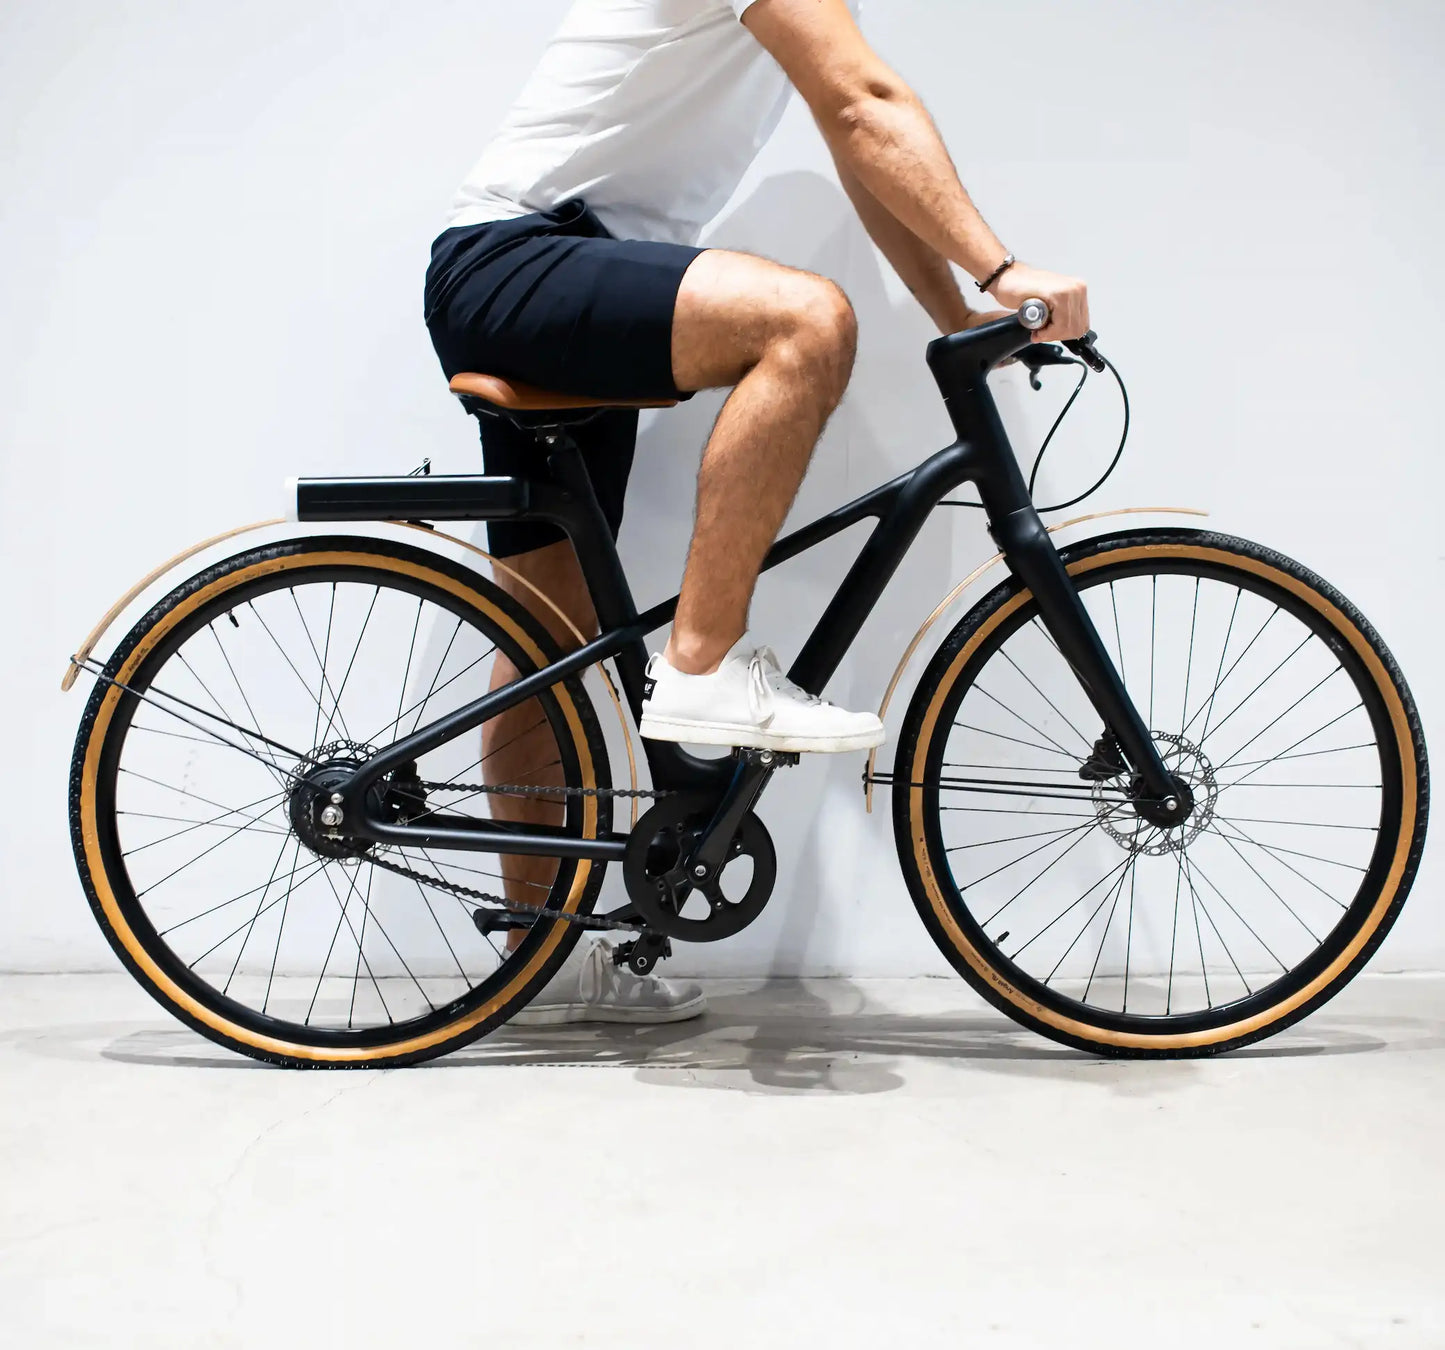 Angell Bike reacondicionada - Bici eléctrica inteligente y elegante